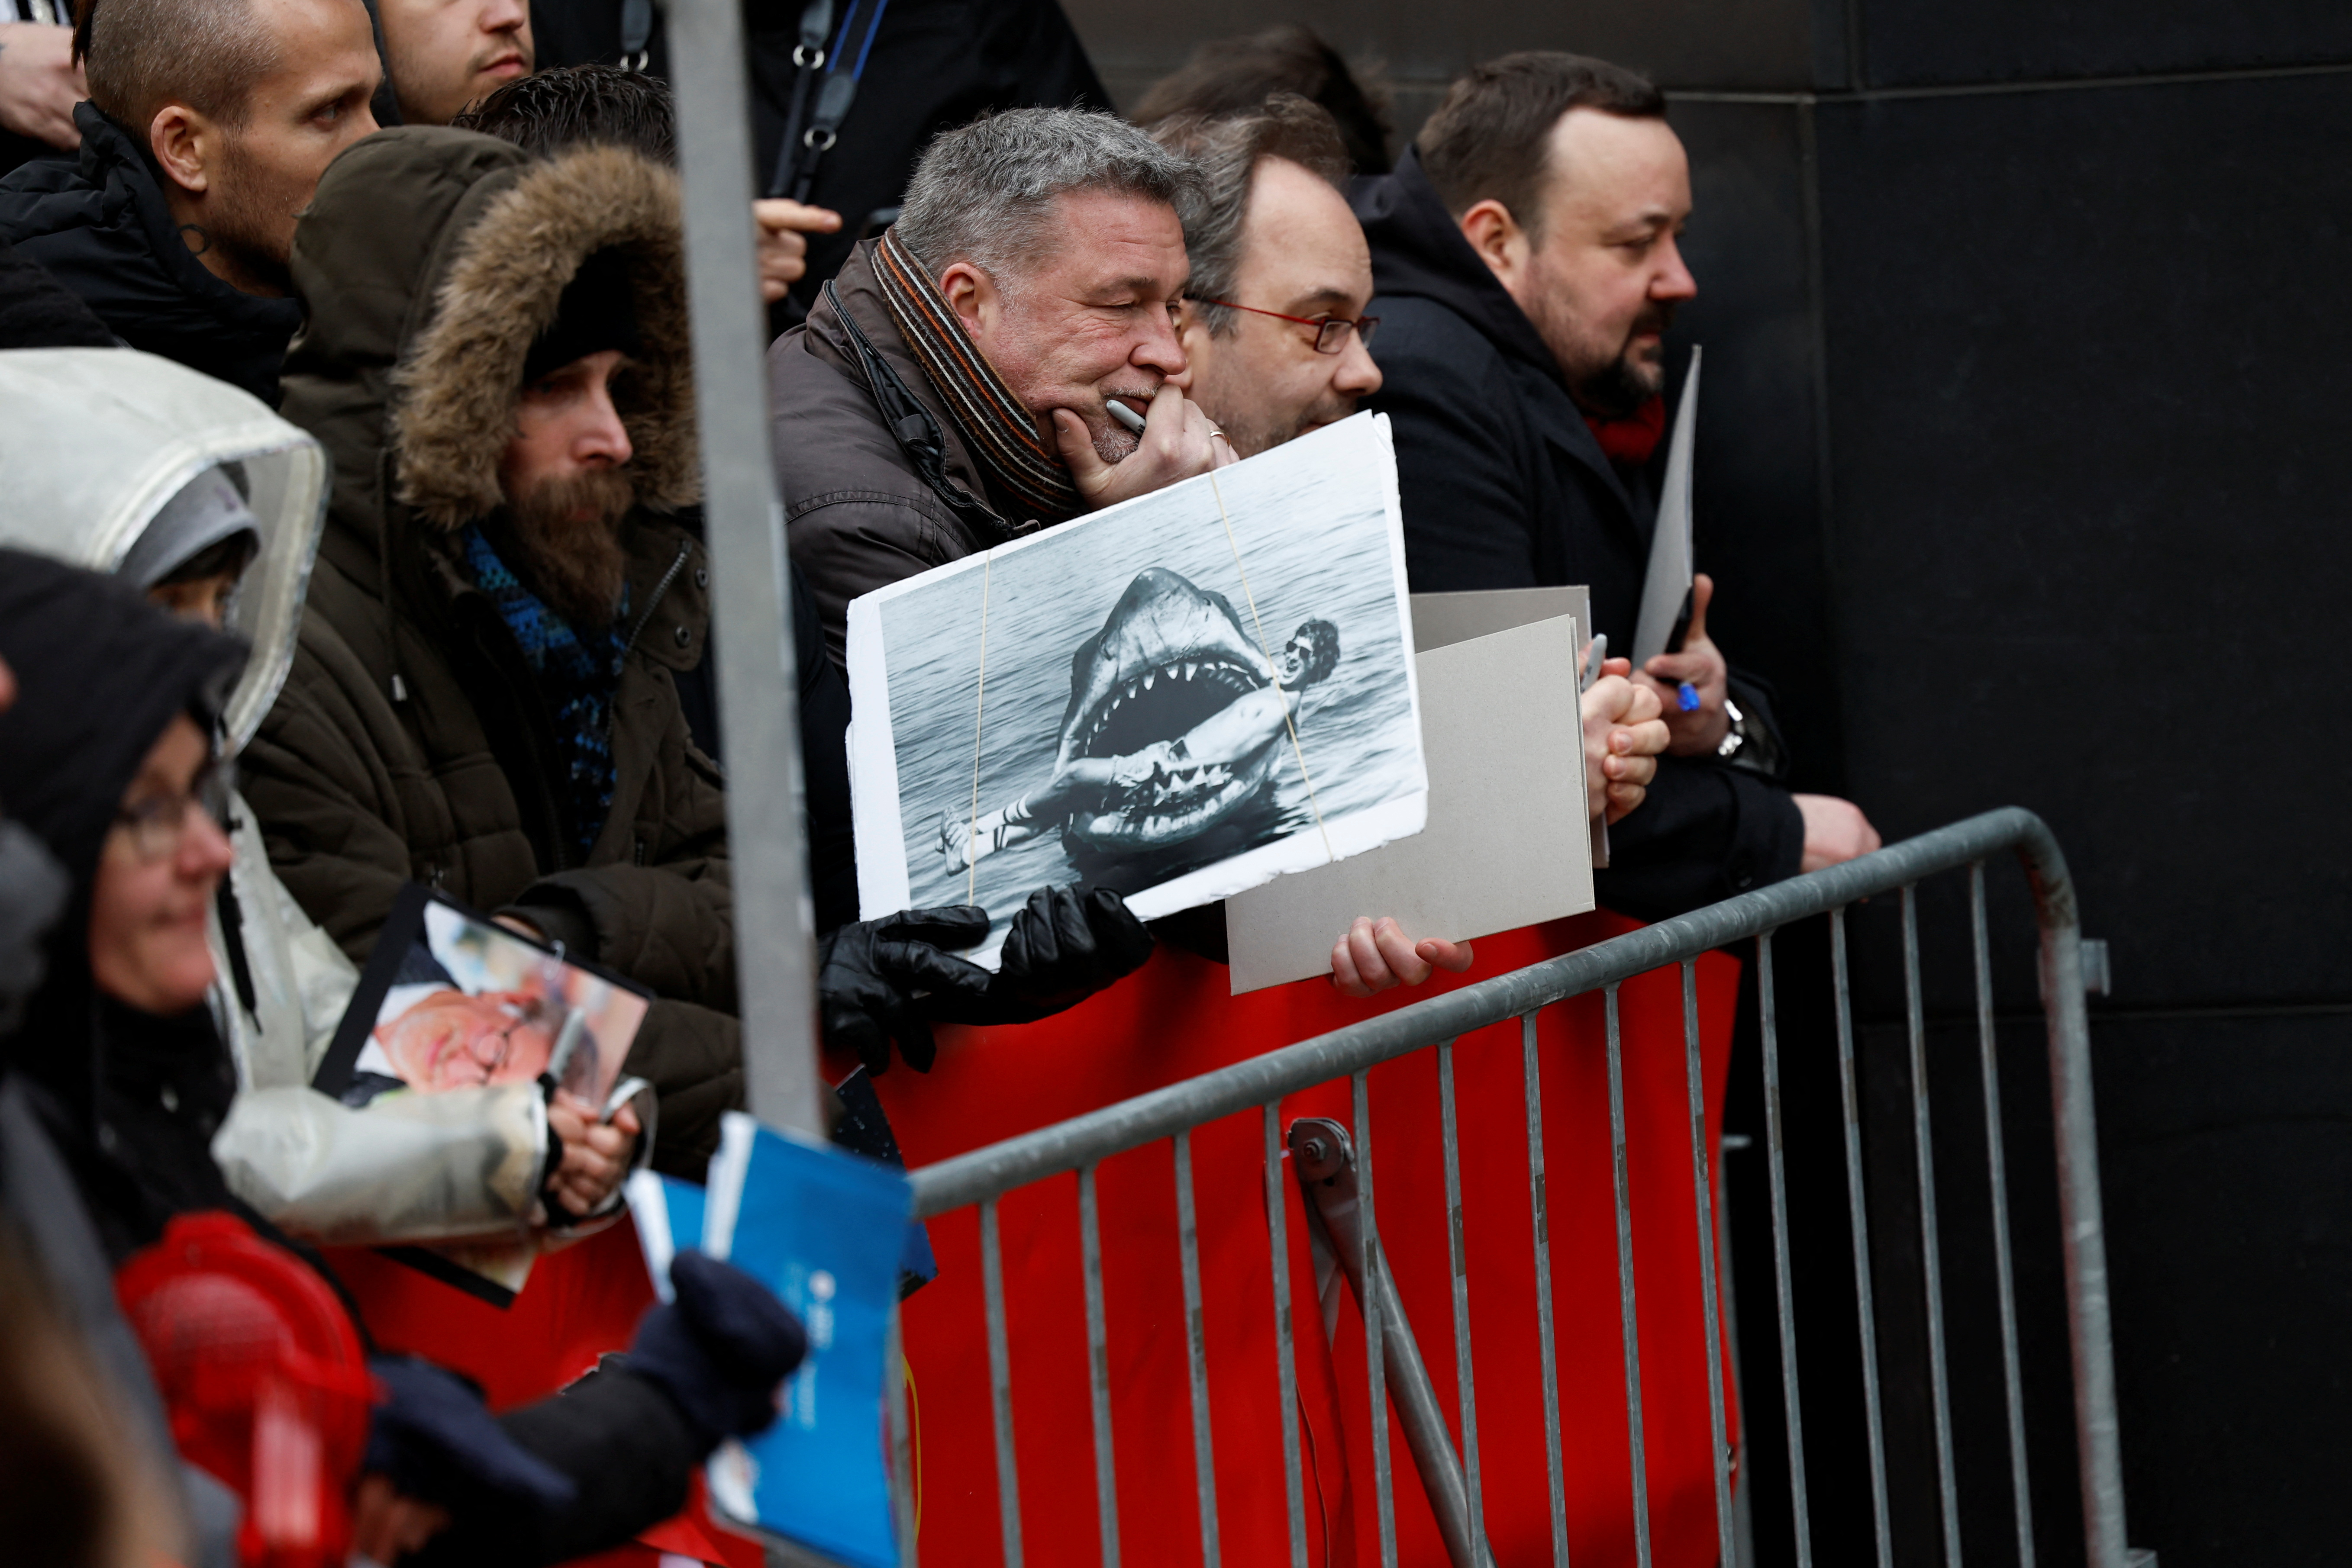 Una persona sostiene una foto de "Tiburón" atrapando a Spielberg antes de la llegada del director a la sesión de fotos (REUTERS/Michele Tantussi)
